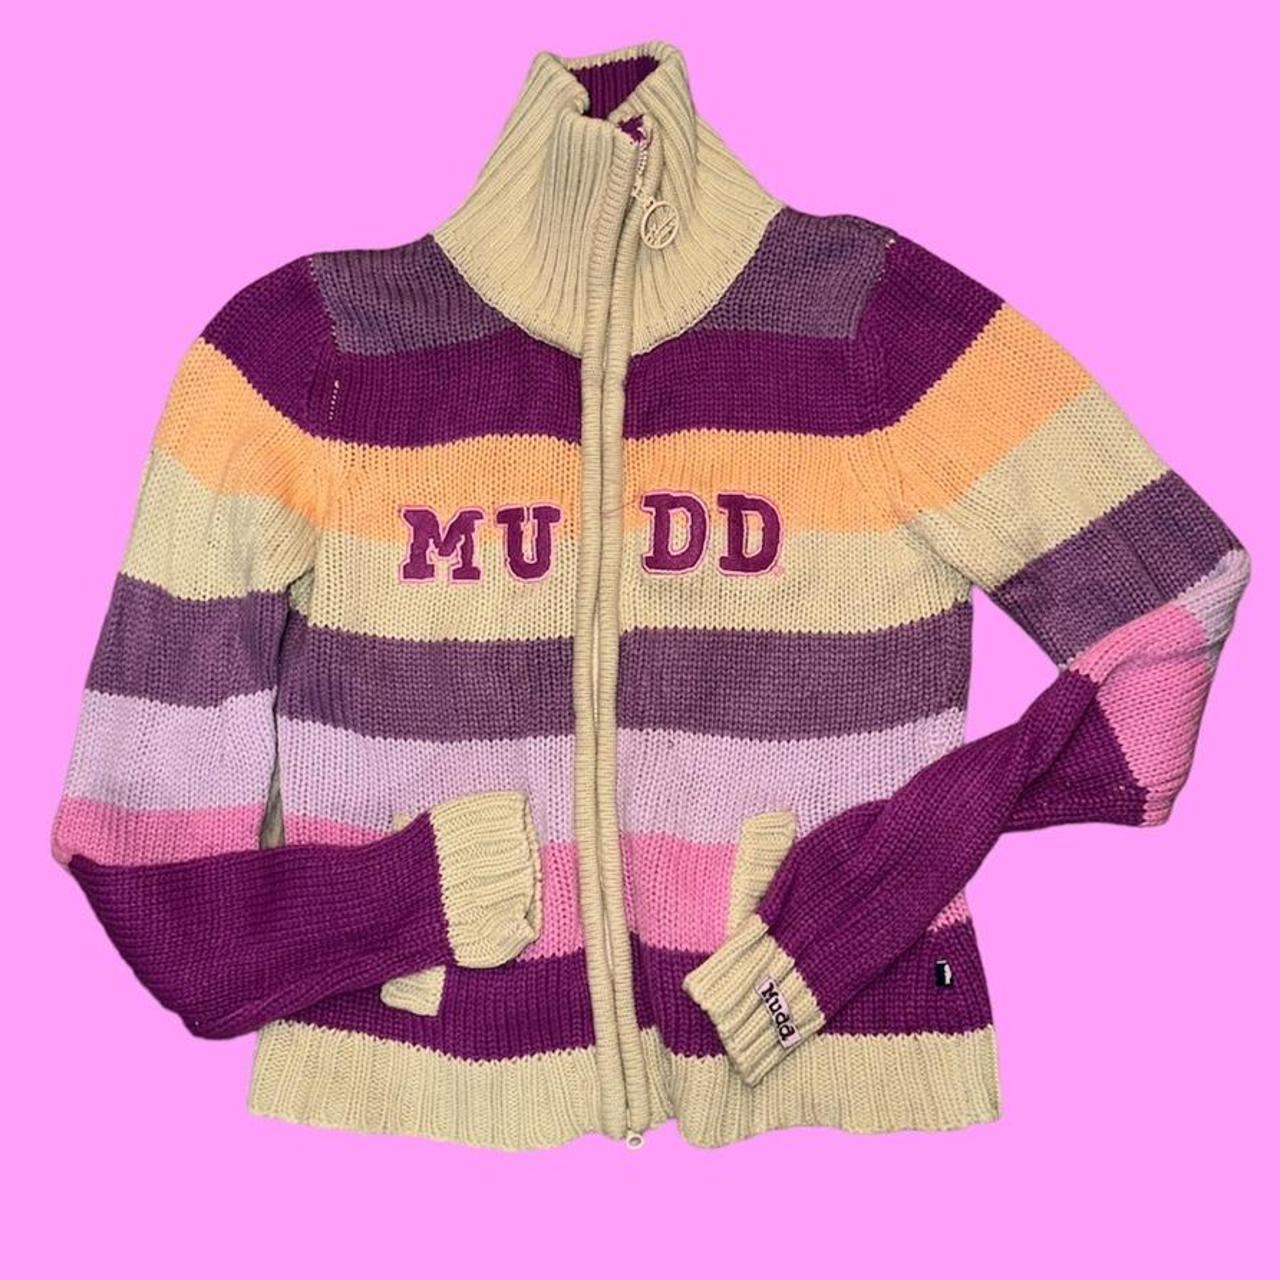 MUDD zip up sweater super cute n cozy size M - Depop